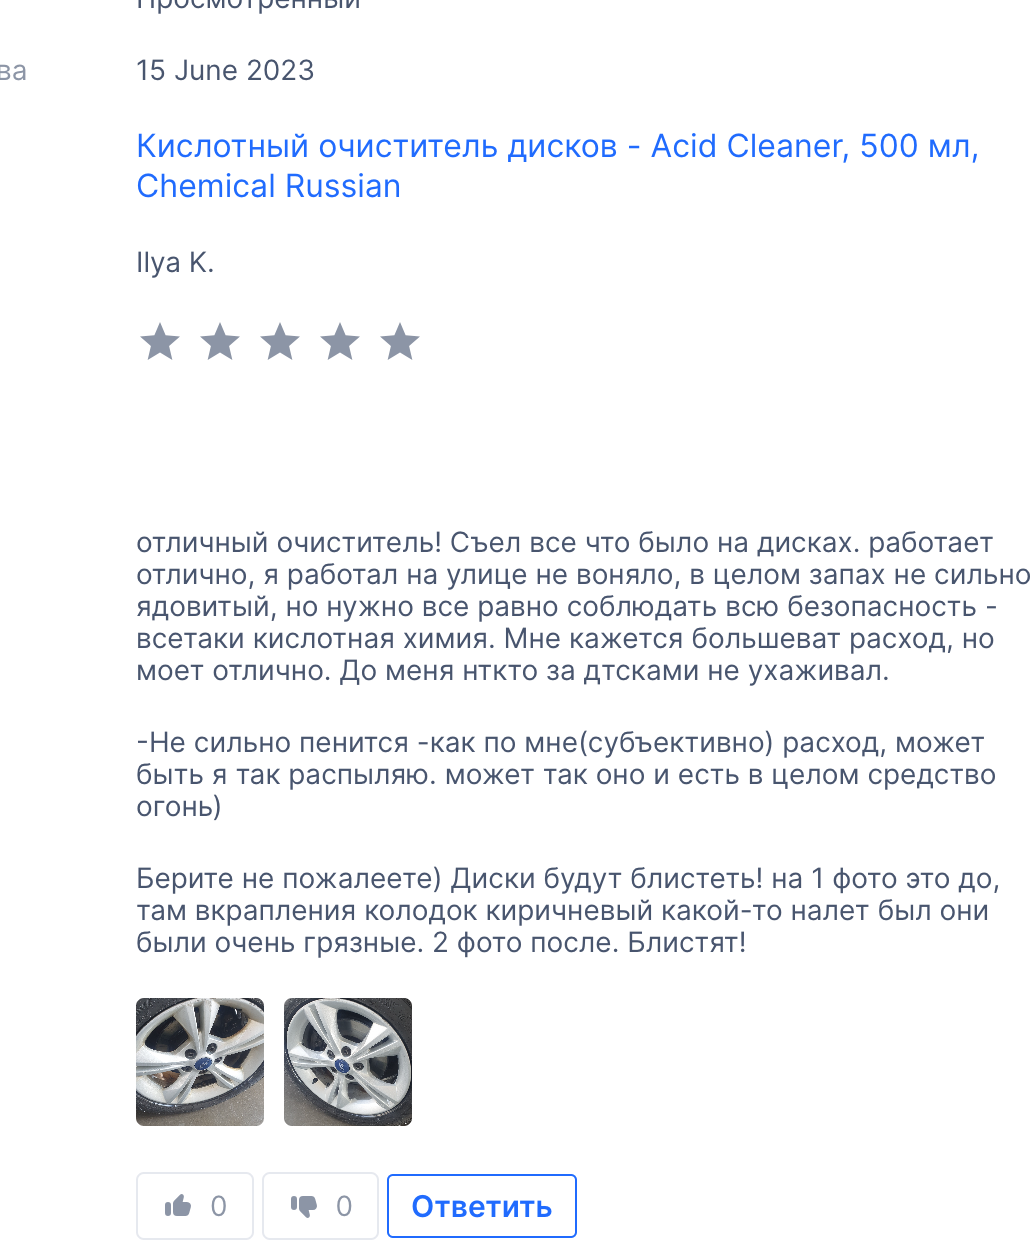 Acid Cleaner - Кислотный очиститель дисков 500 мл CR745 Chemical Russian